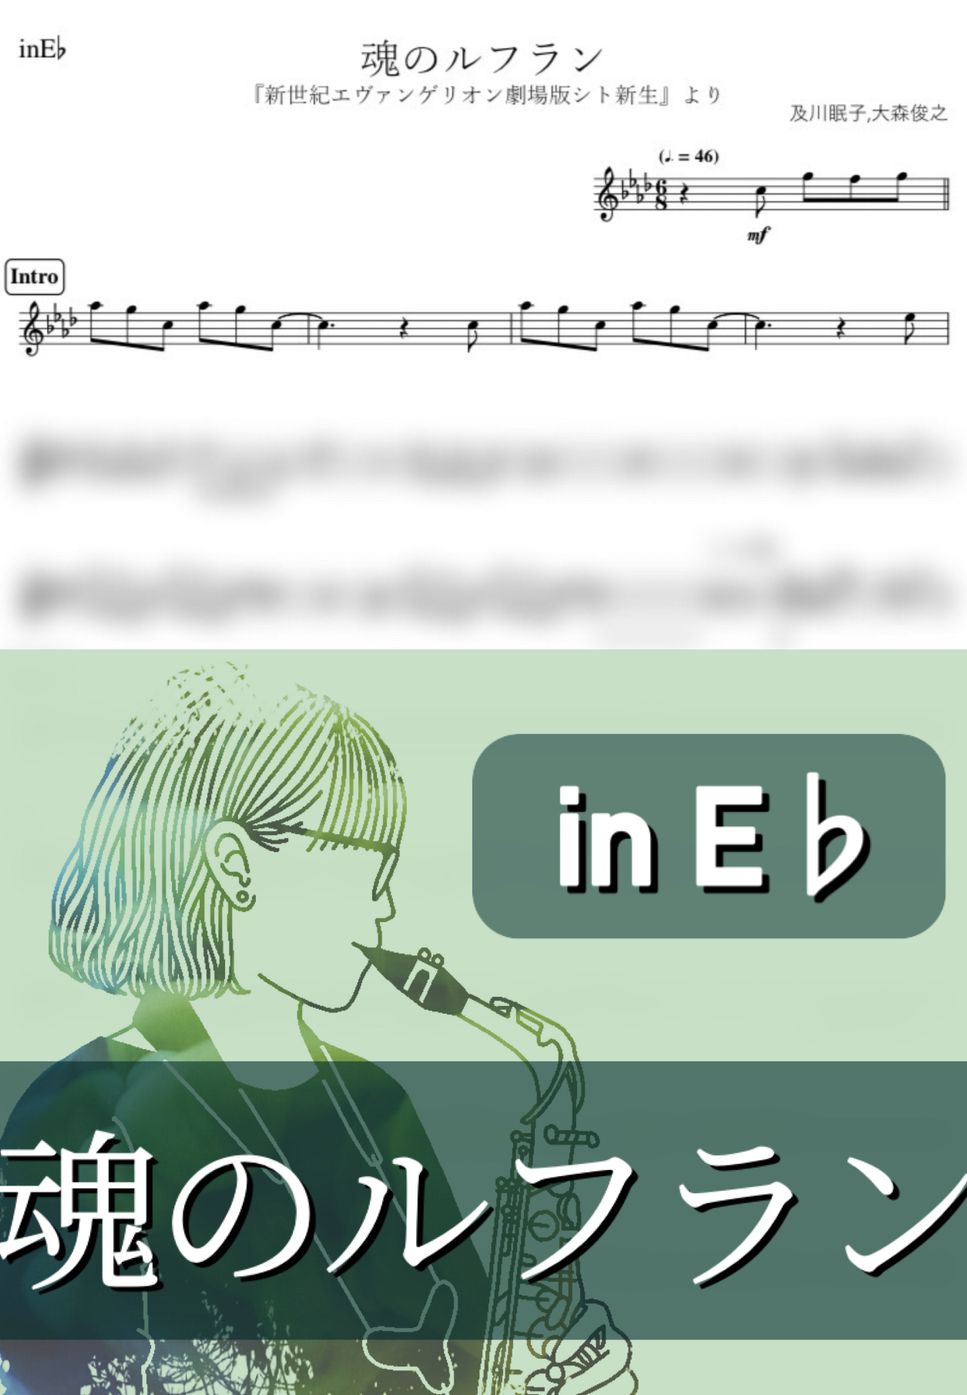 新世紀エヴァンゲリオン - 魂のルフラン (E♭) by kanamusic